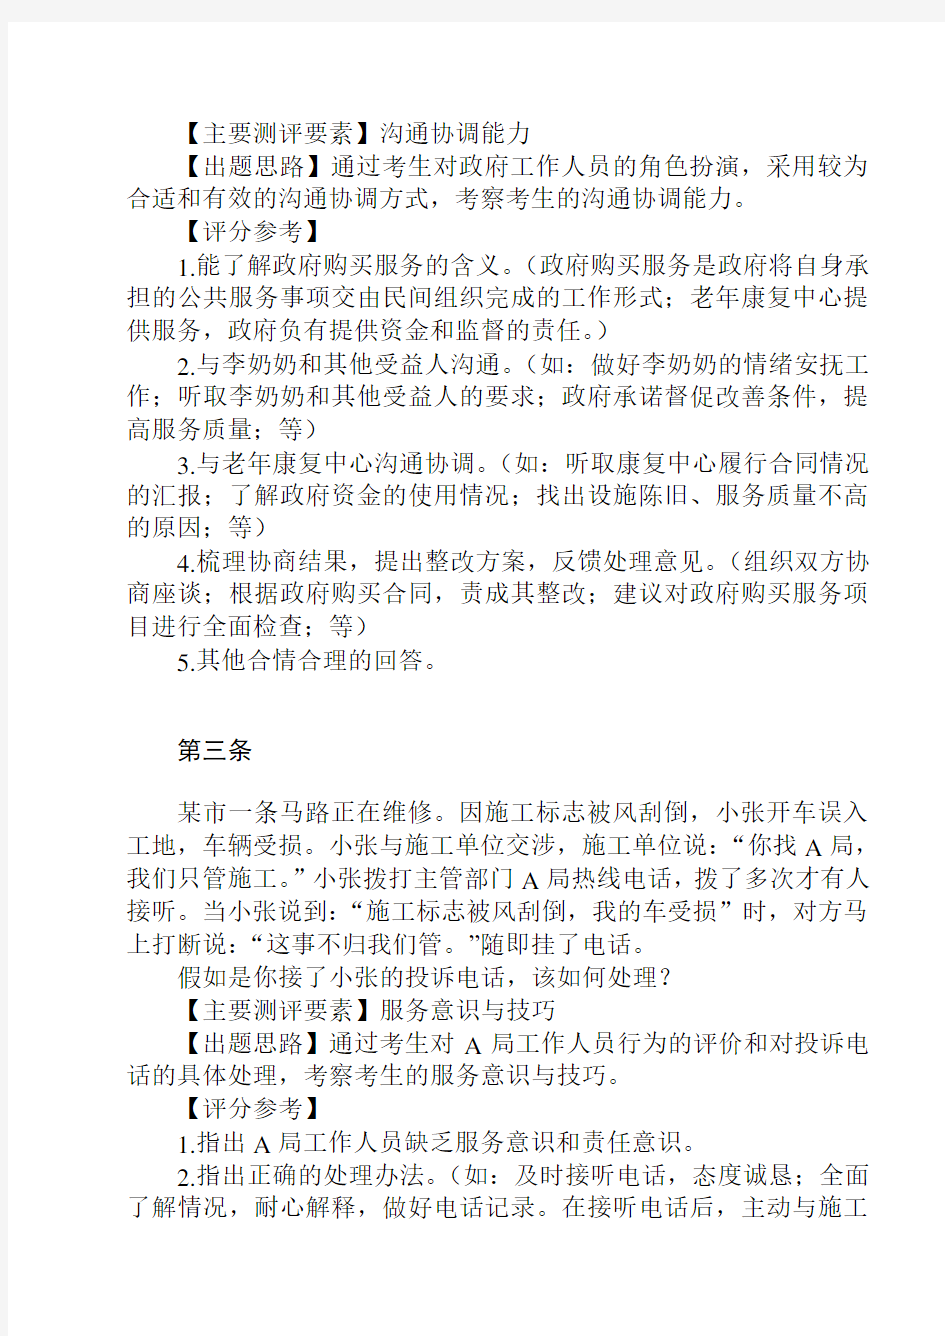 2012年江苏省考试录用公务员面试题本及参考答案